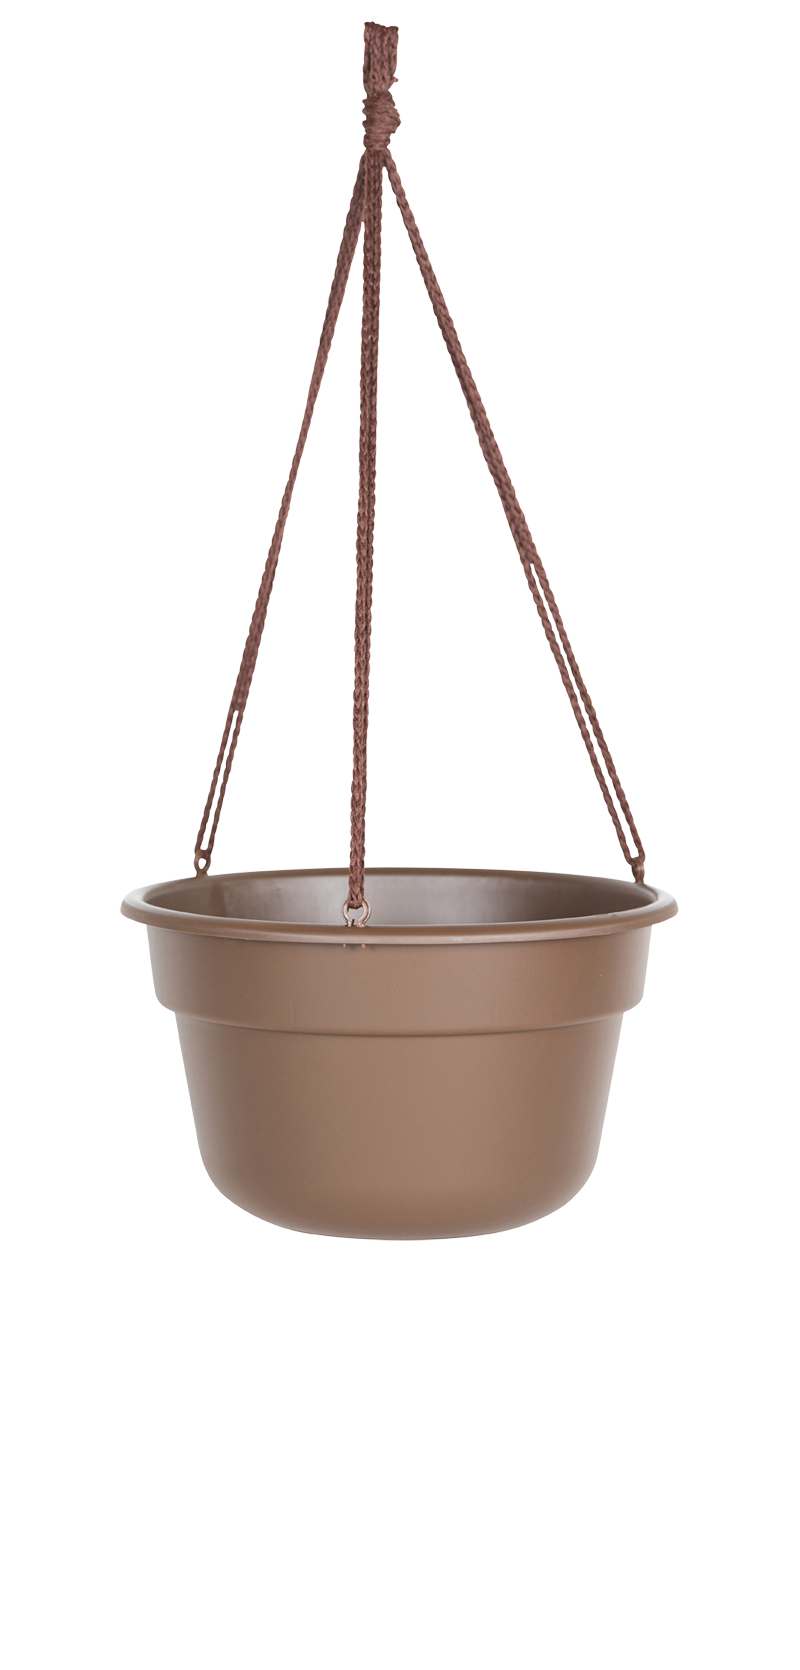 Bloem Dura Cotta Hanging Basket Planter- 12 in